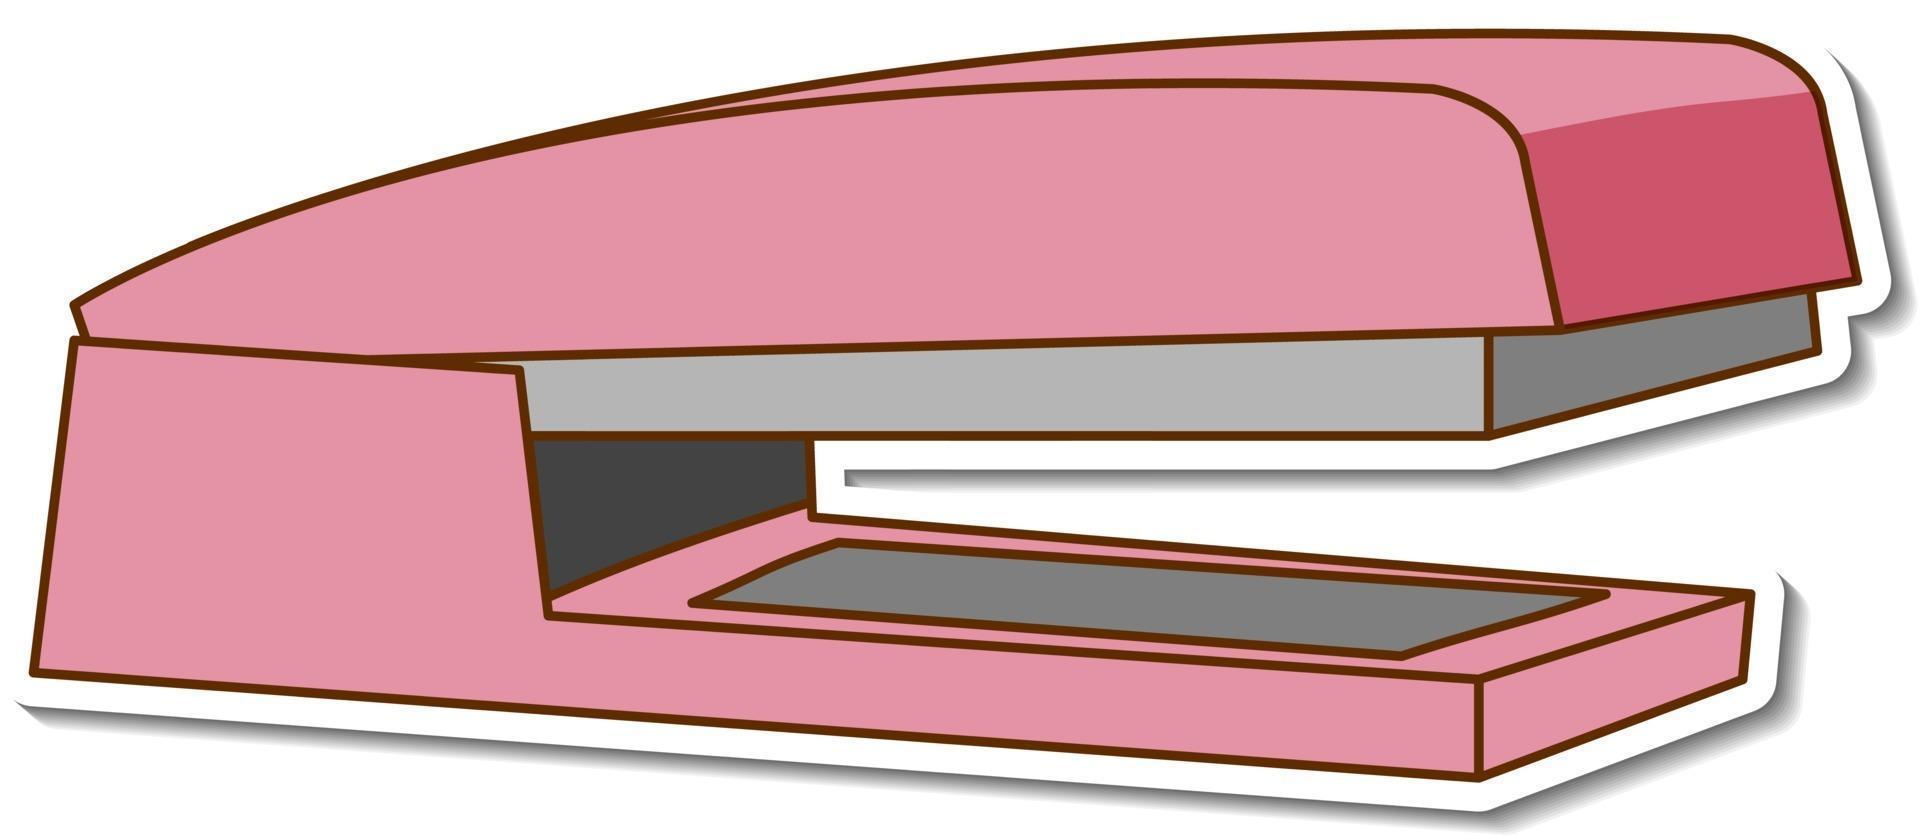 Etiqueta engomada de la grapadora rosa sobre fondo blanco. vector